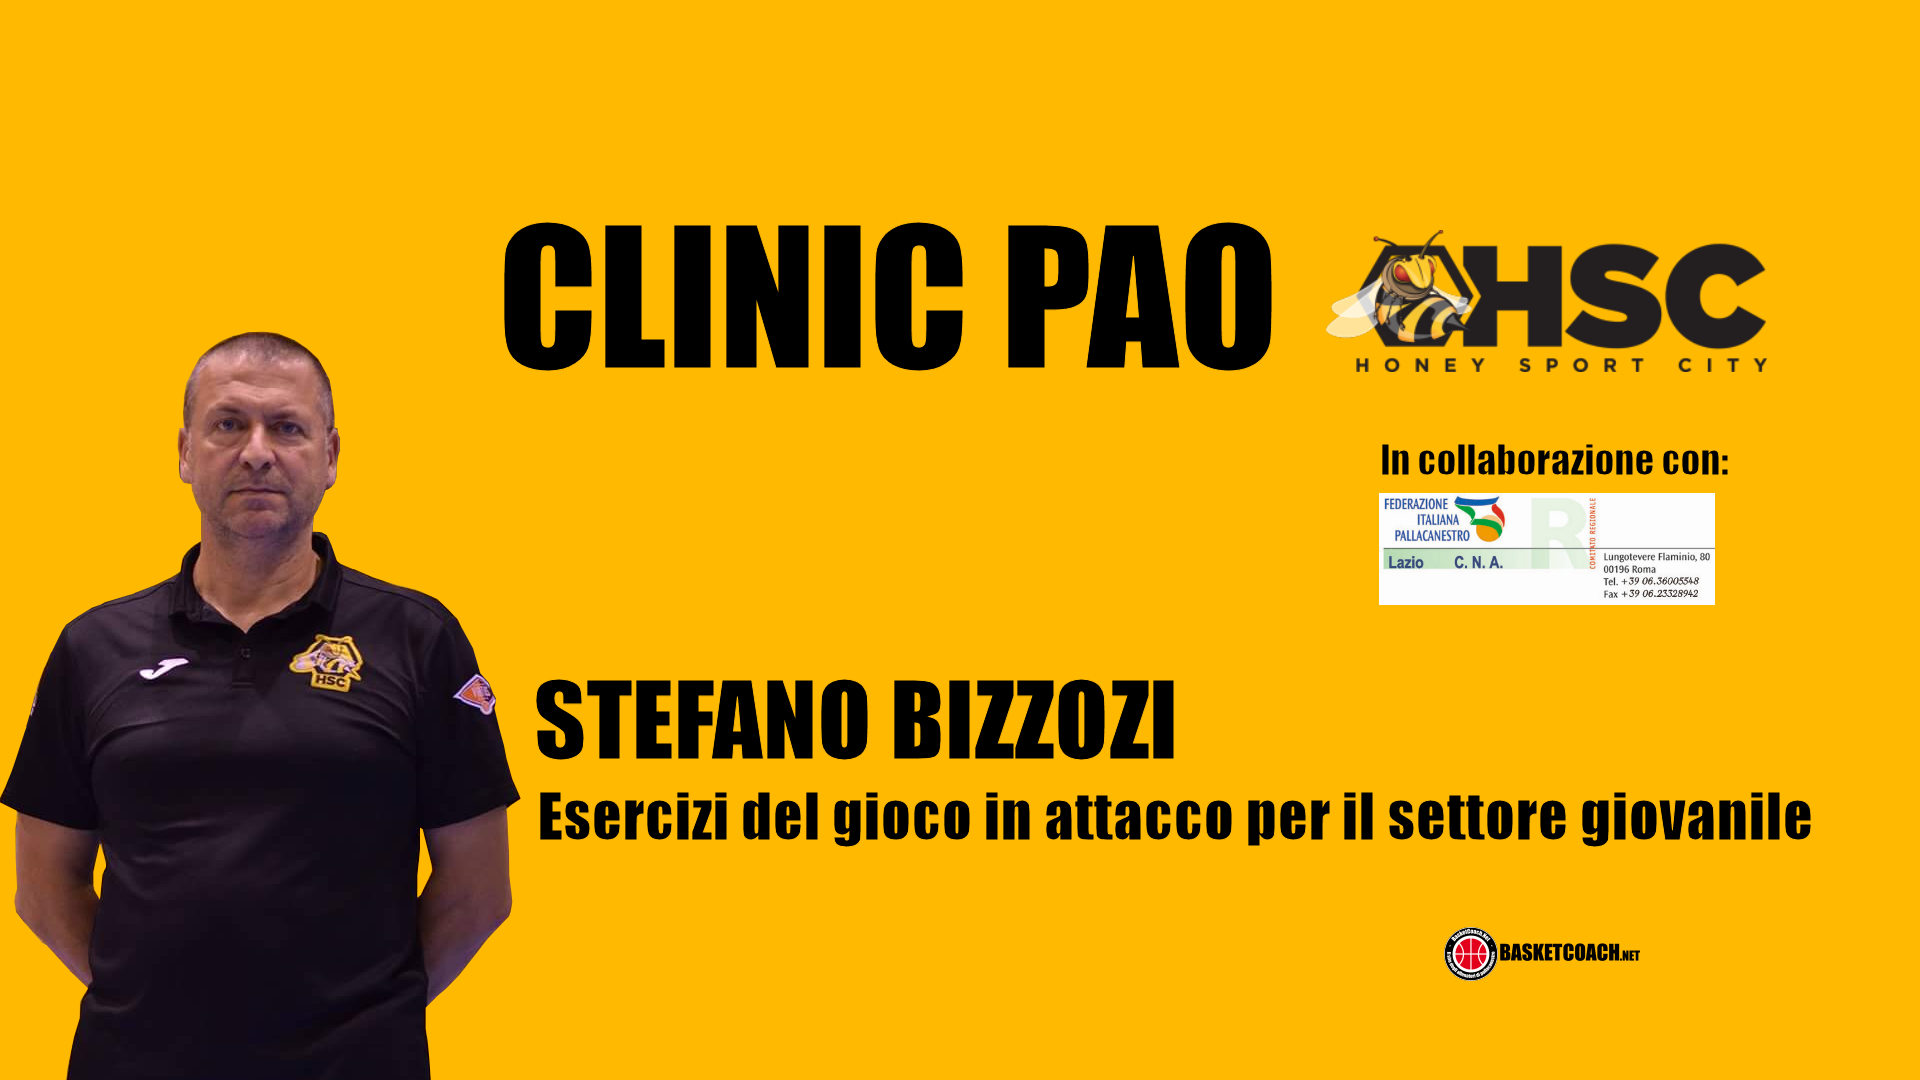 <p>Stefano Bizzozi - Esercizi del gioco in attacco per il settore giovanile</p>
